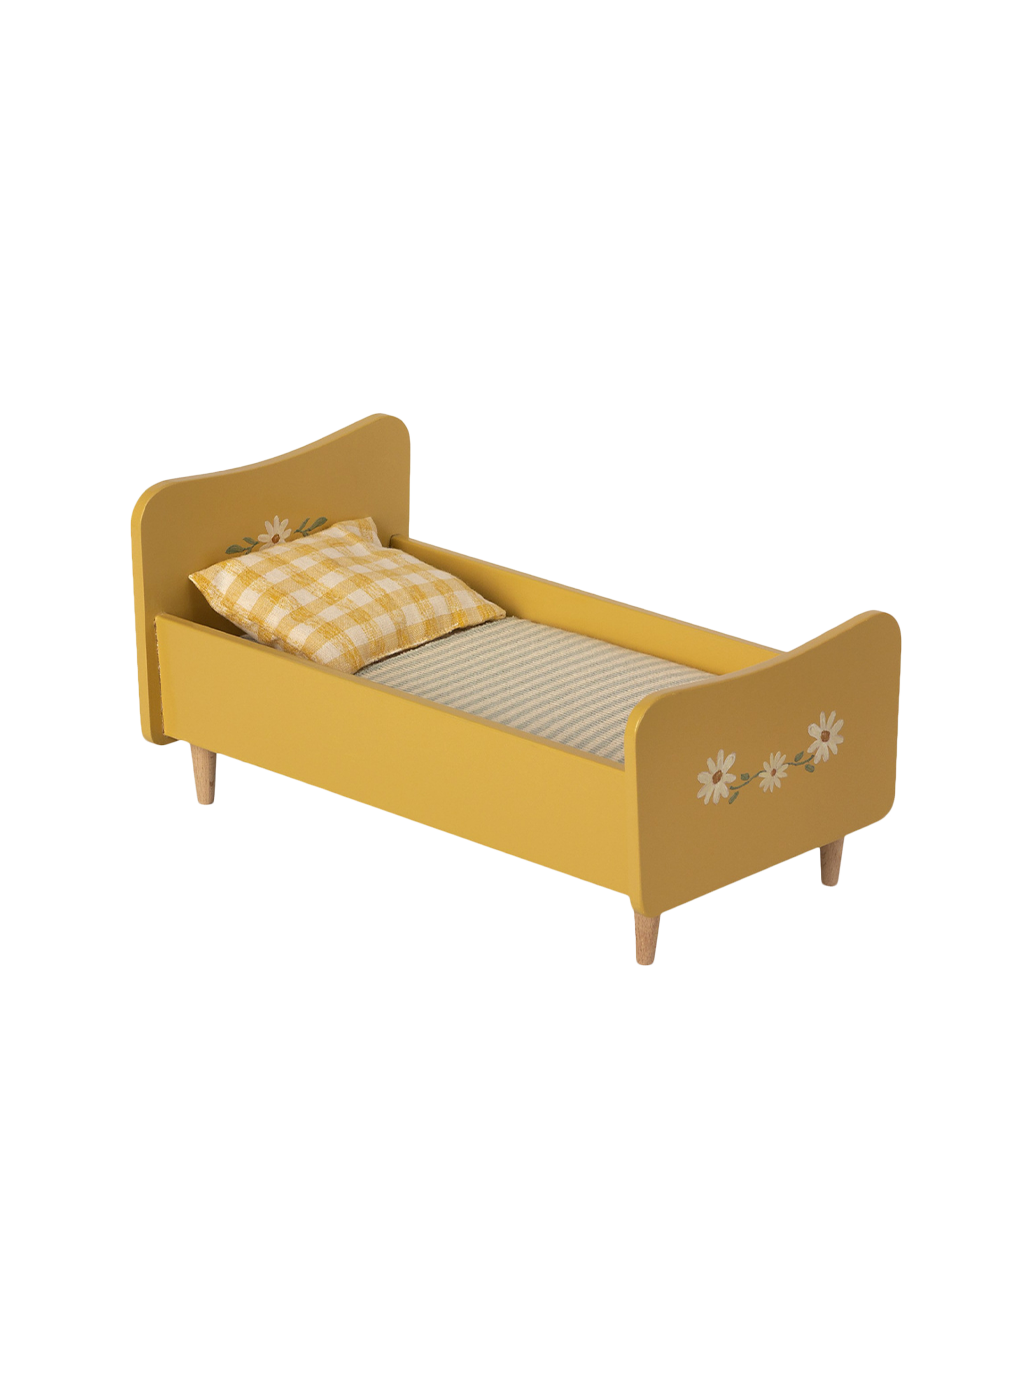 minicuna de madera con ropa de cama